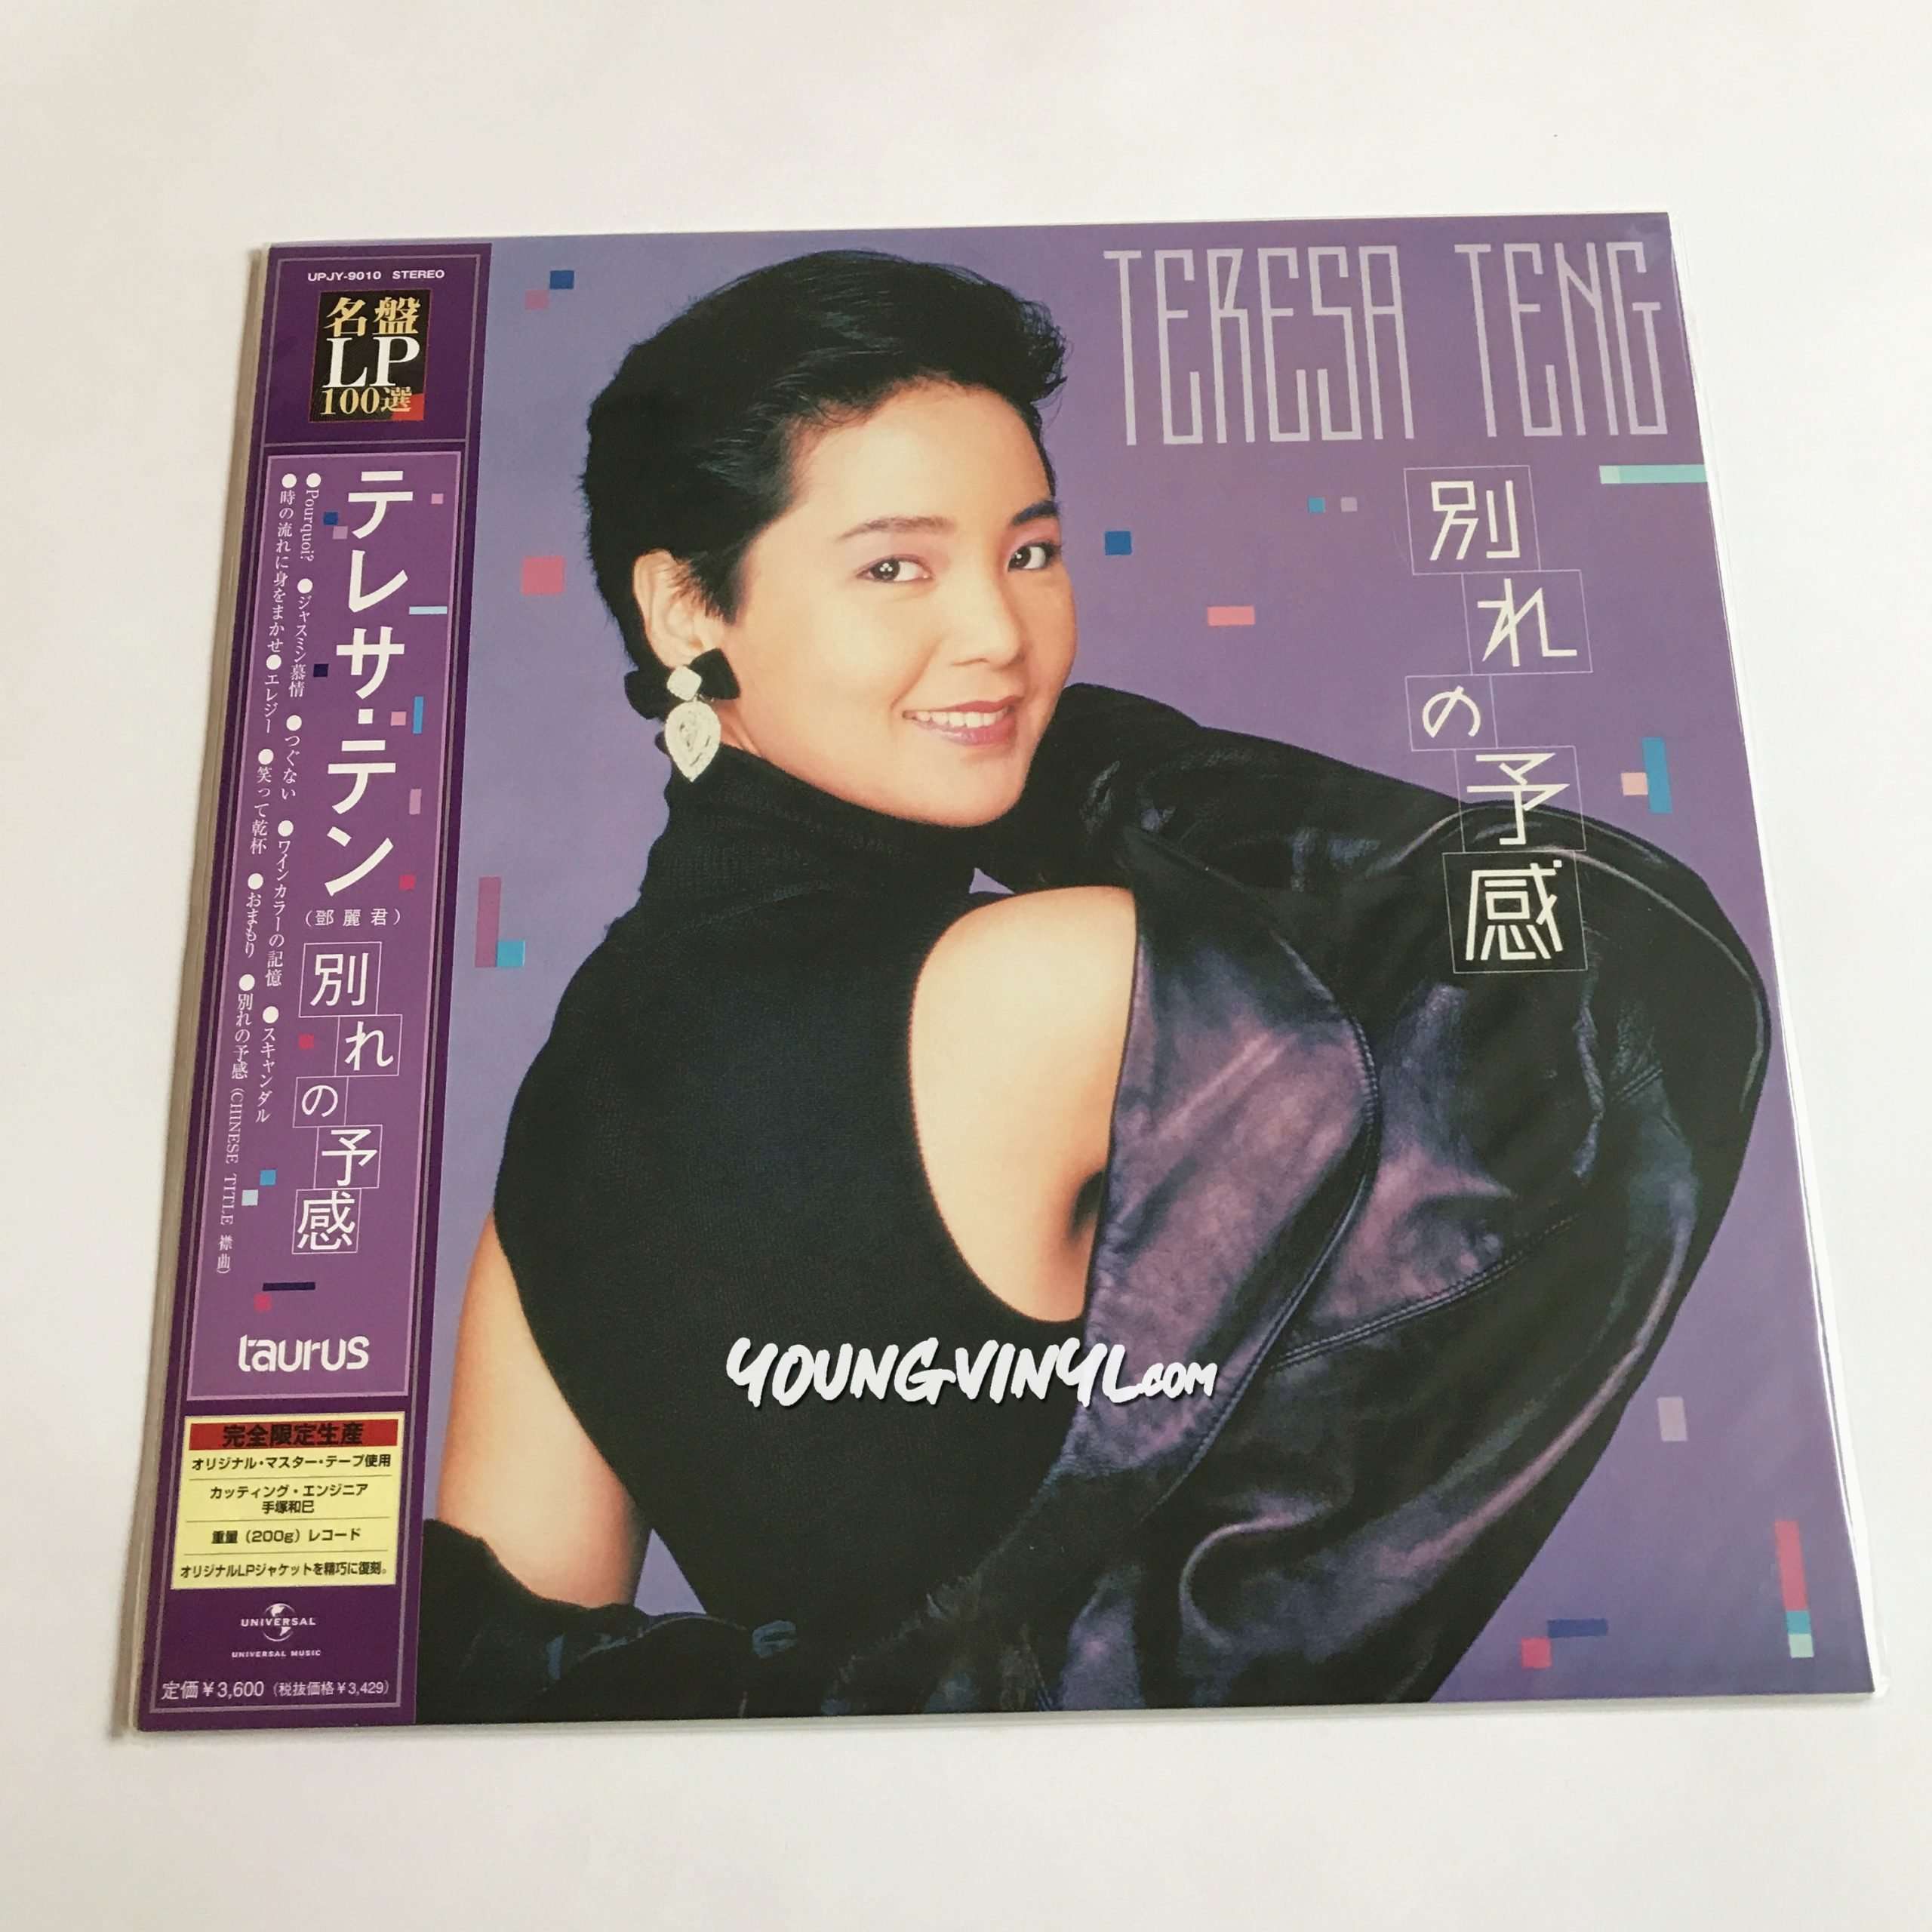 鄧麗君 テレサテン 楽風 台湾盤 Teresa Teng レコード 当時物 - その他